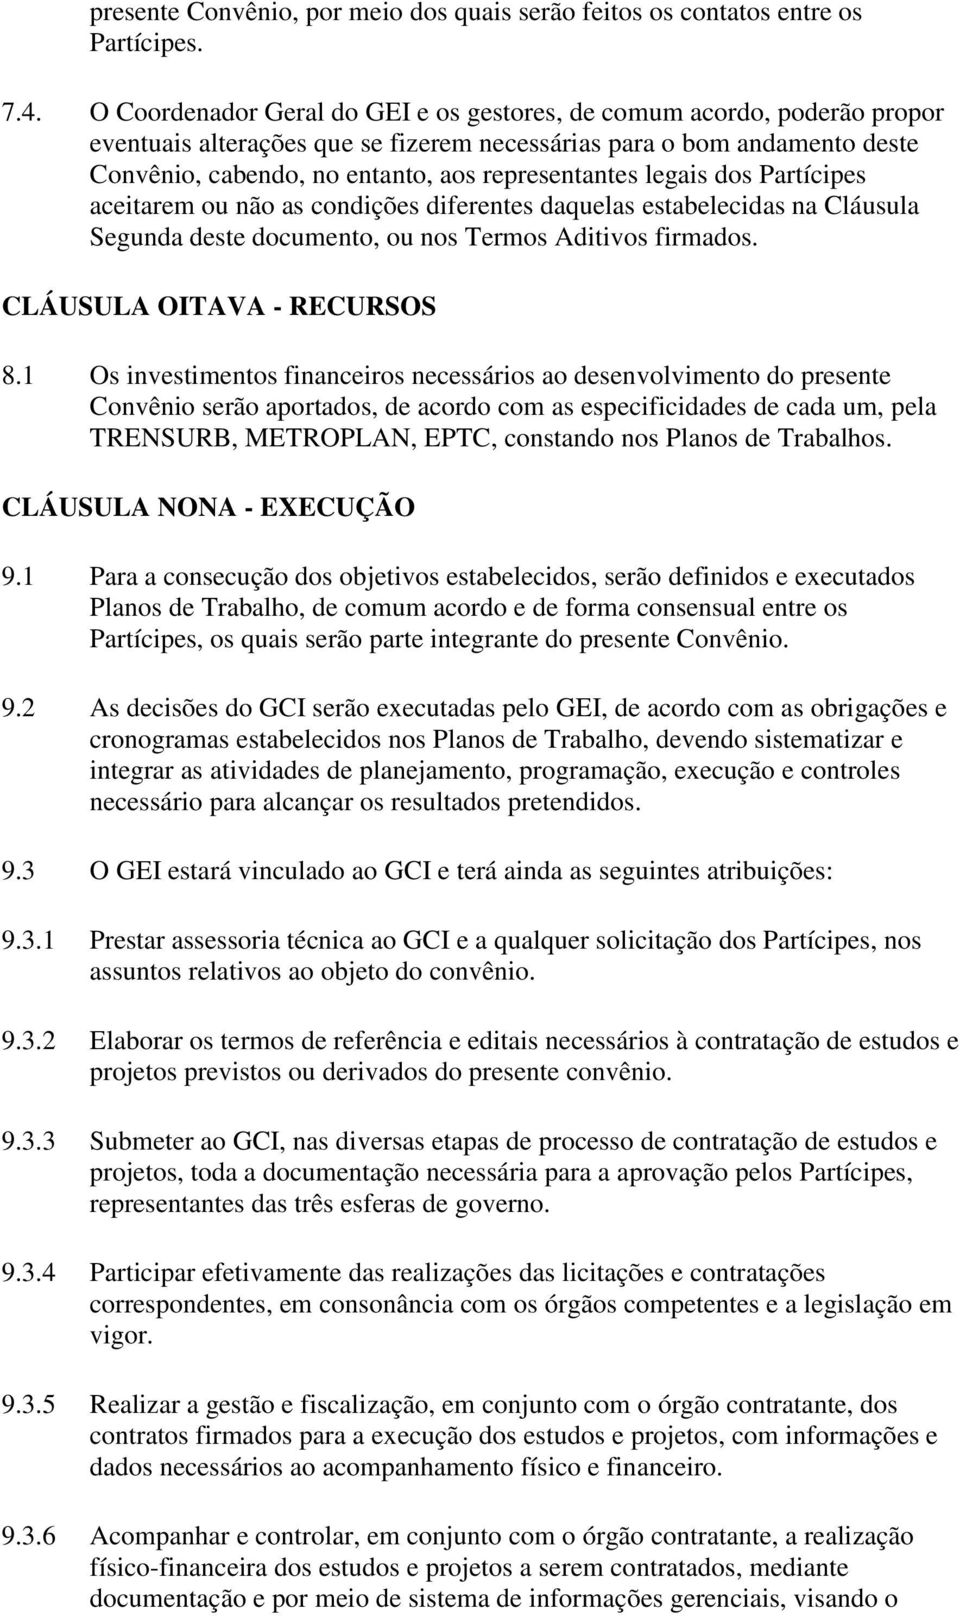 legais dos Partícipes aceitarem ou não as condições diferentes daquelas estabelecidas na Cláusula Segunda deste documento, ou nos Termos Aditivos firmados. CLÁUSULA OITAVA - RECURSOS 8.